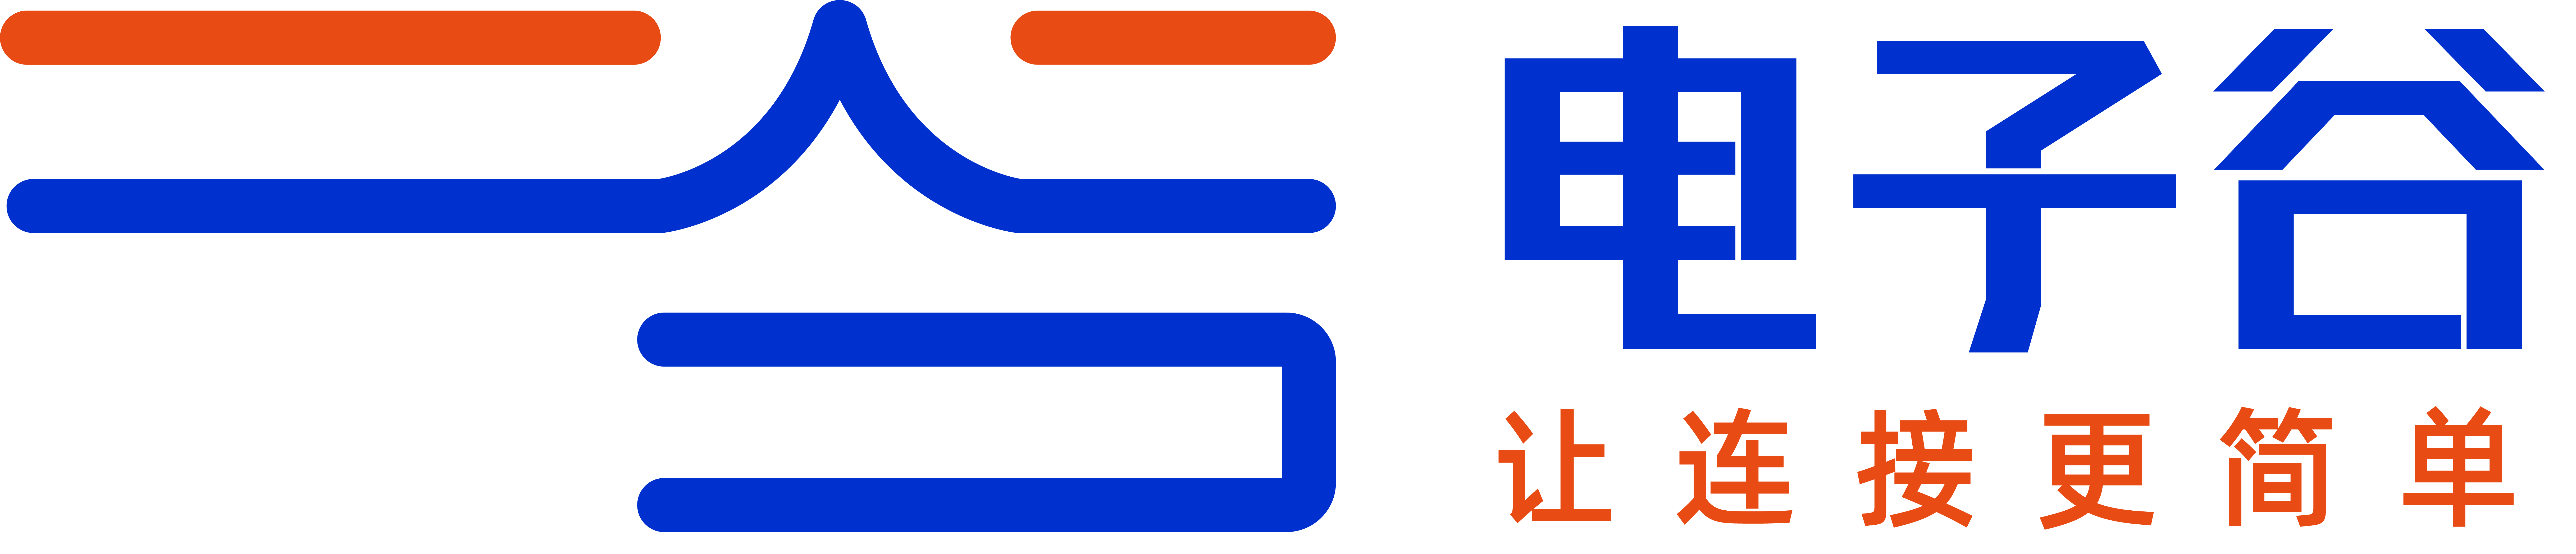 电子谷logo